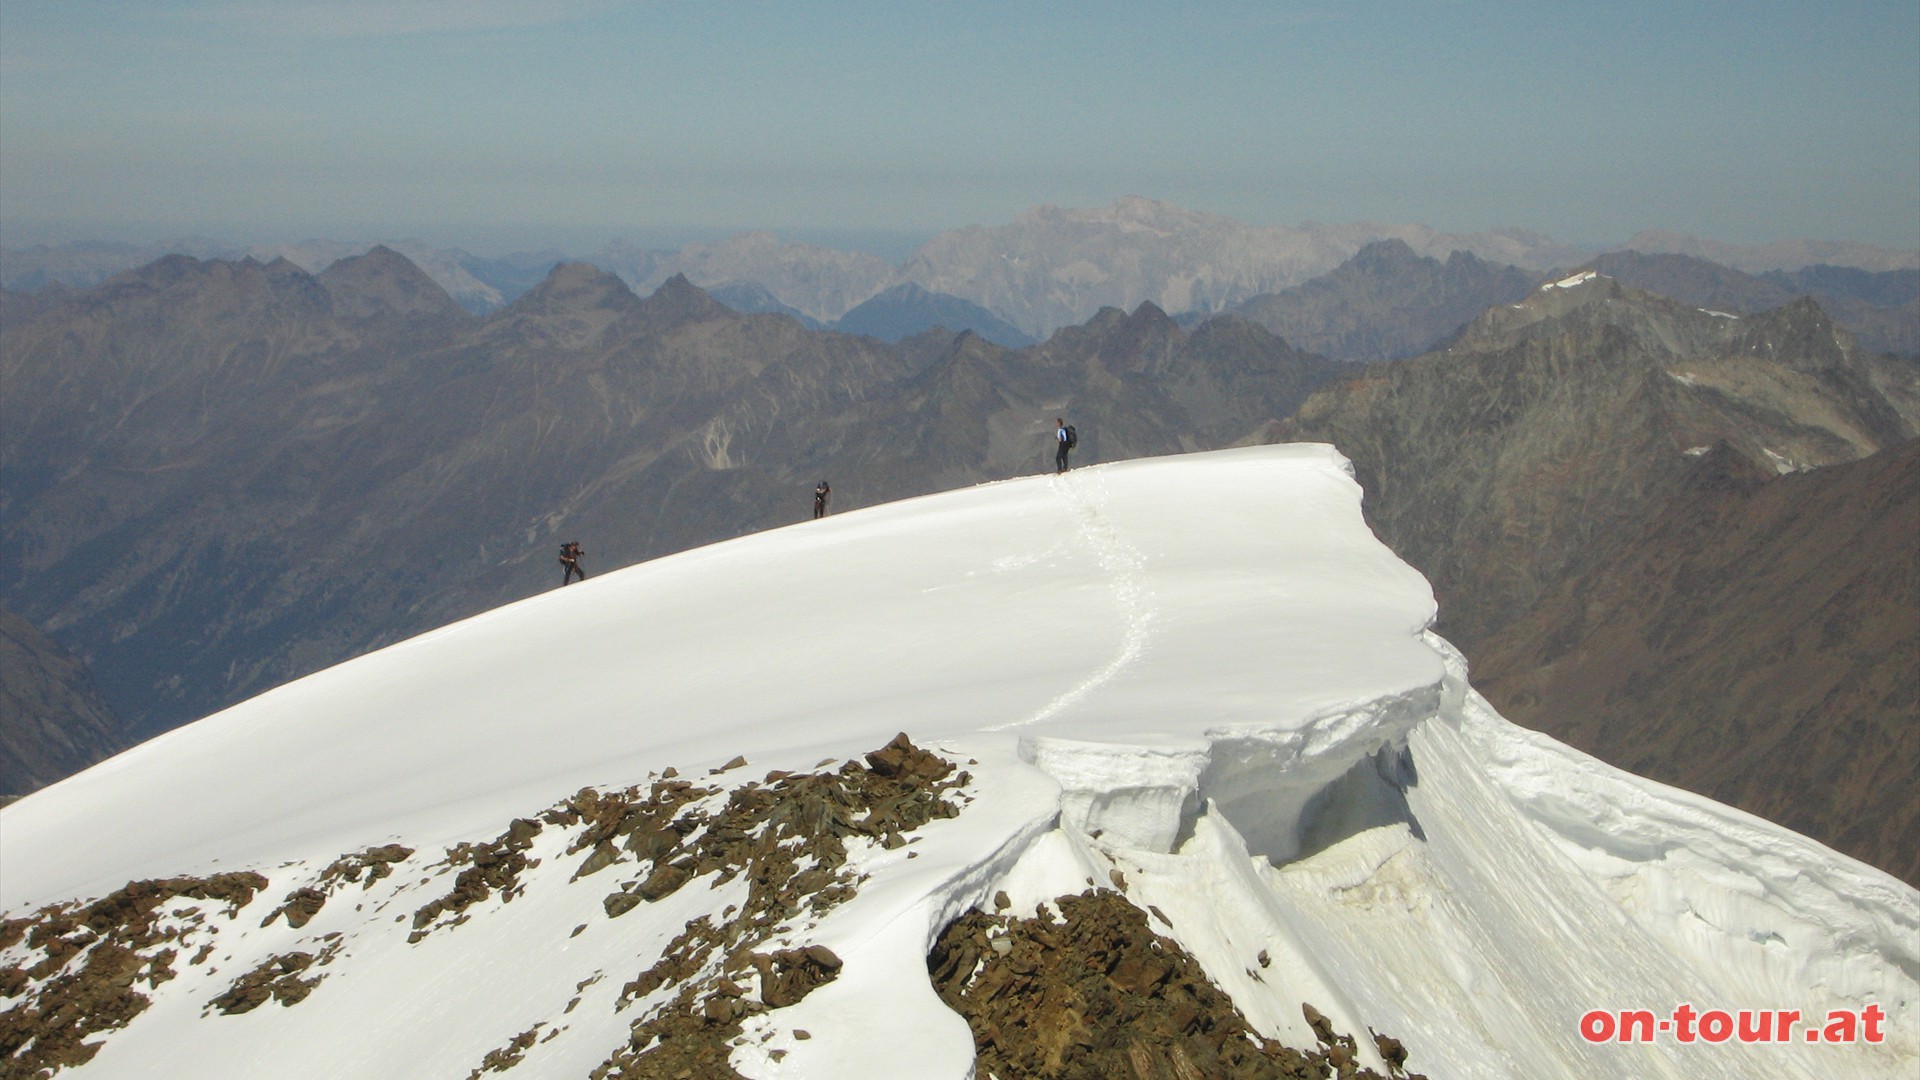 Im Norden eine Besonderheit der Wildspitze, den Nordgipfel. Ehemals höchster Gipfel mit 3774 m Höhe. Aufgrund der Gletscherschmelzprozesse sank die Höhe auf nun vermutlich etwa 3768 m, und damit unter die Südgipfelhöhe.